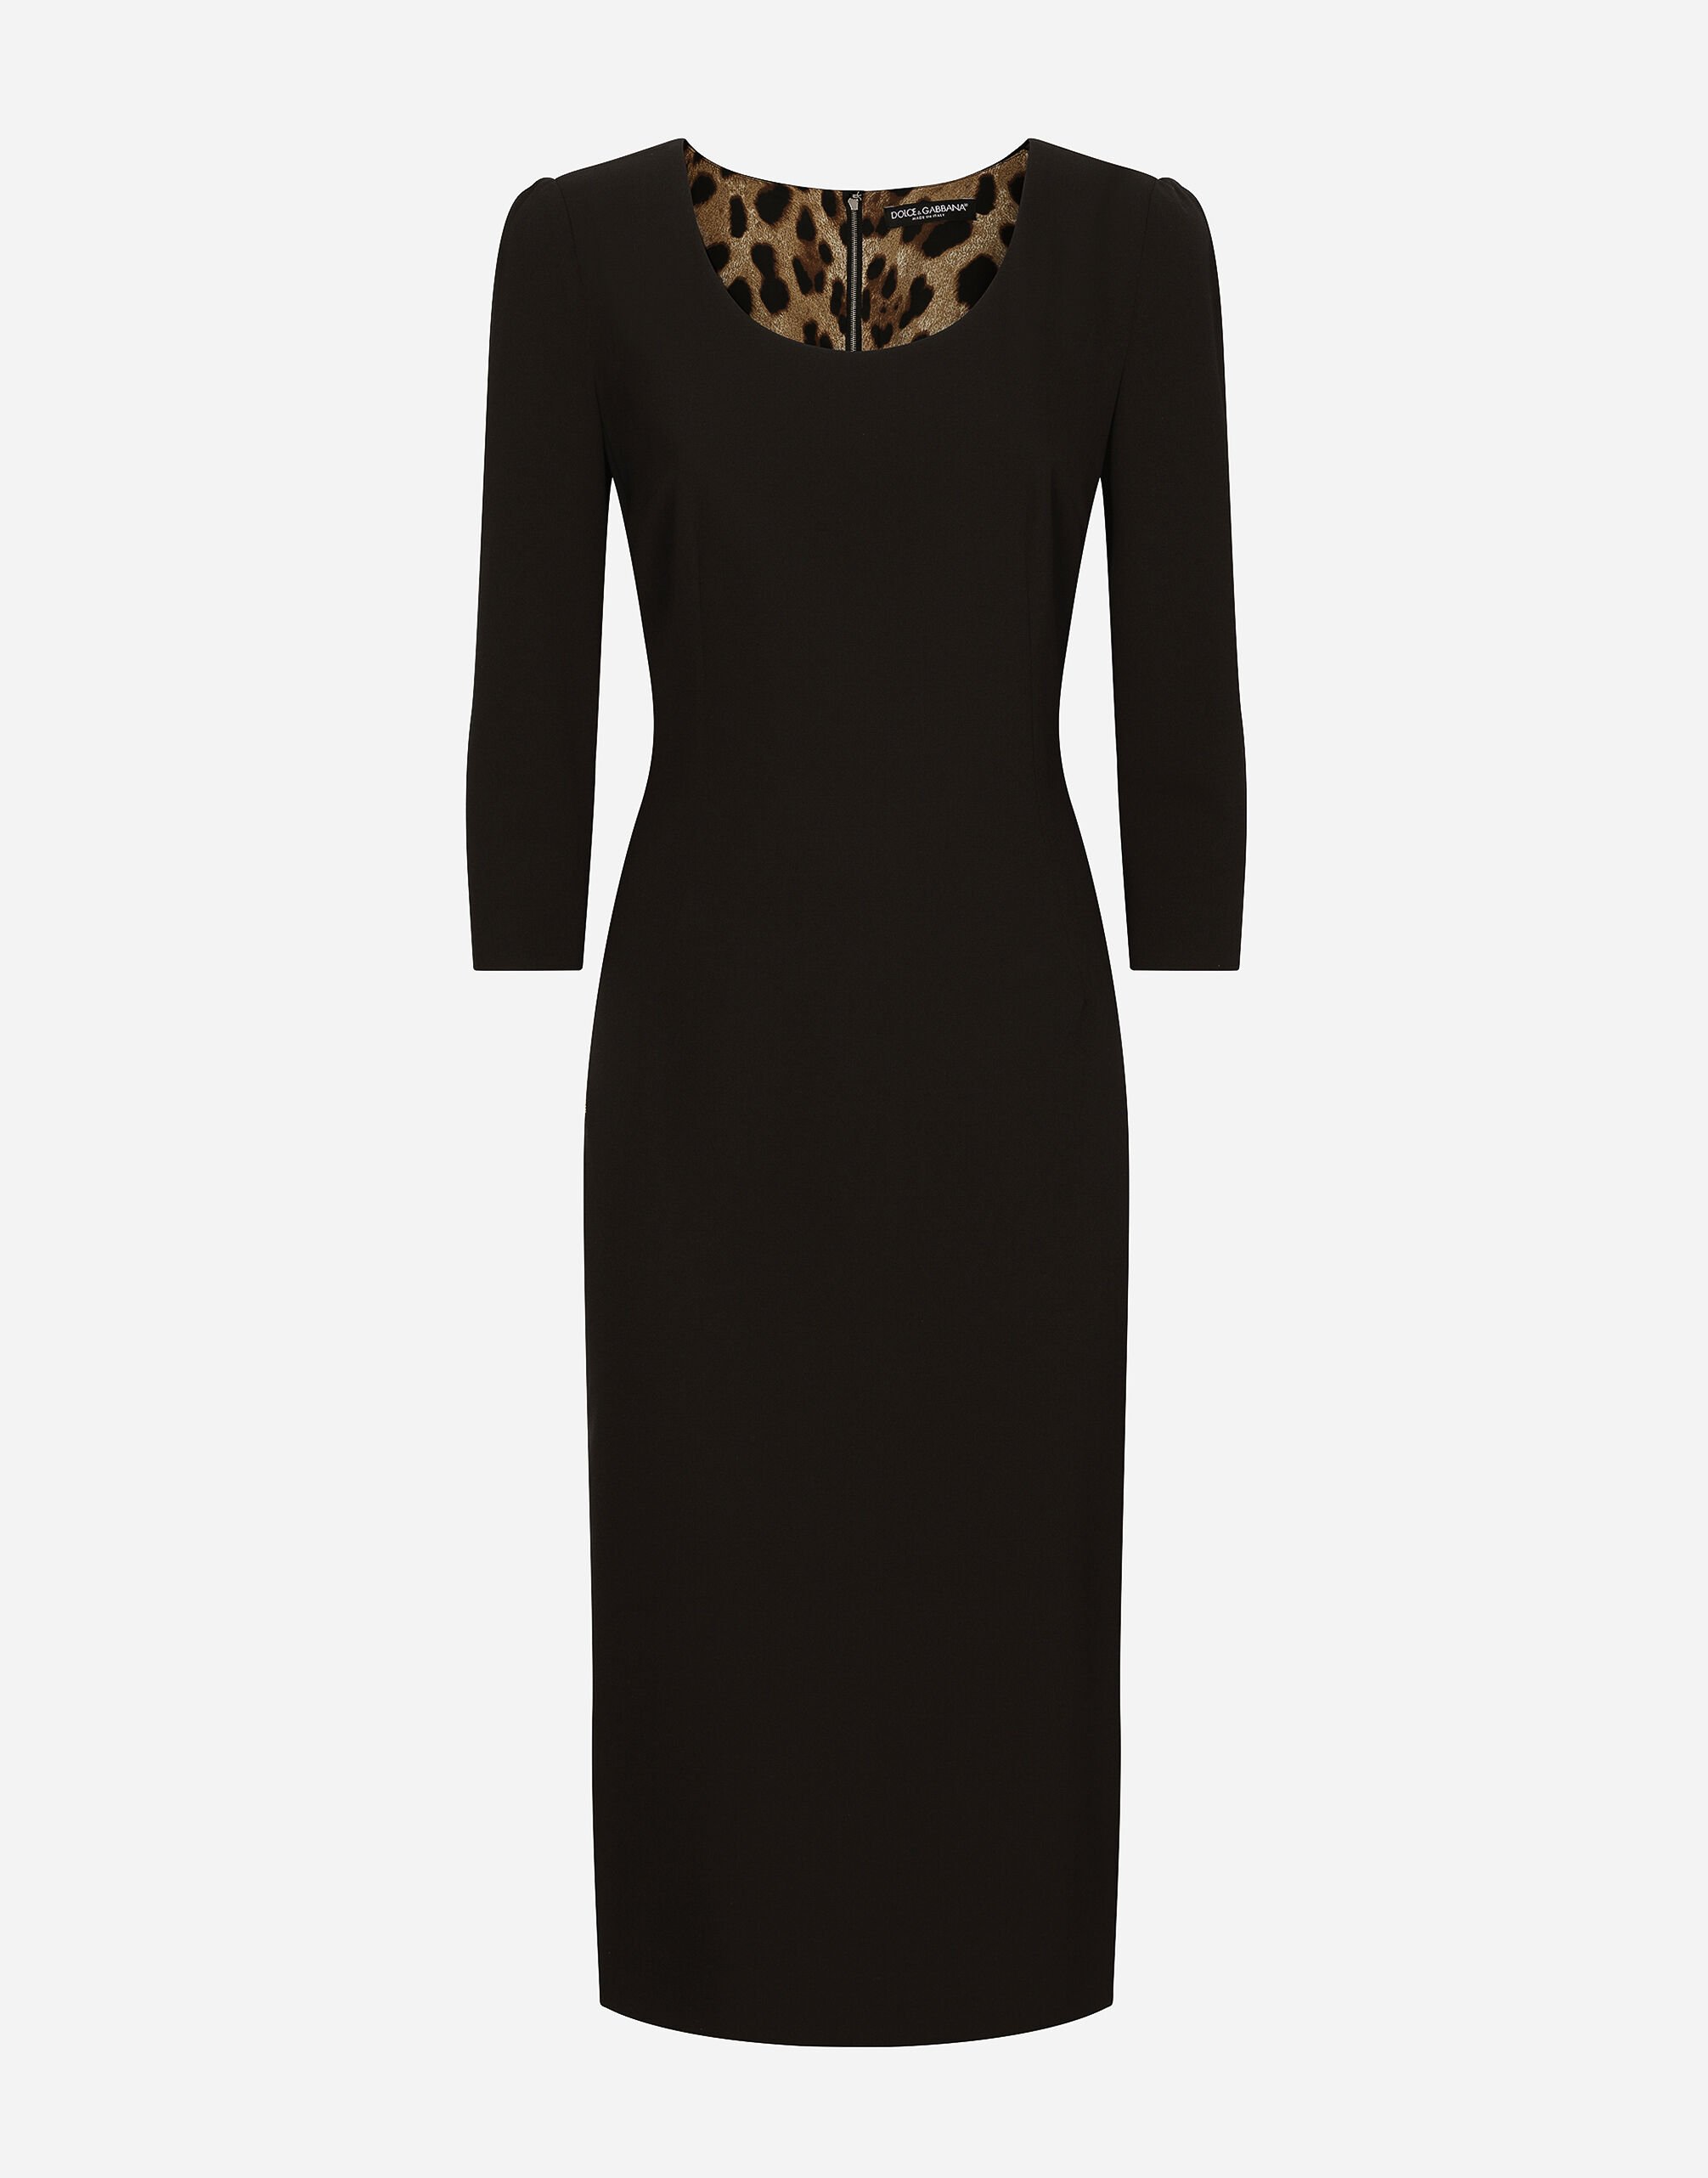 Dolce & Gabbana Woolen calf-length dress Black F63G8TG9798